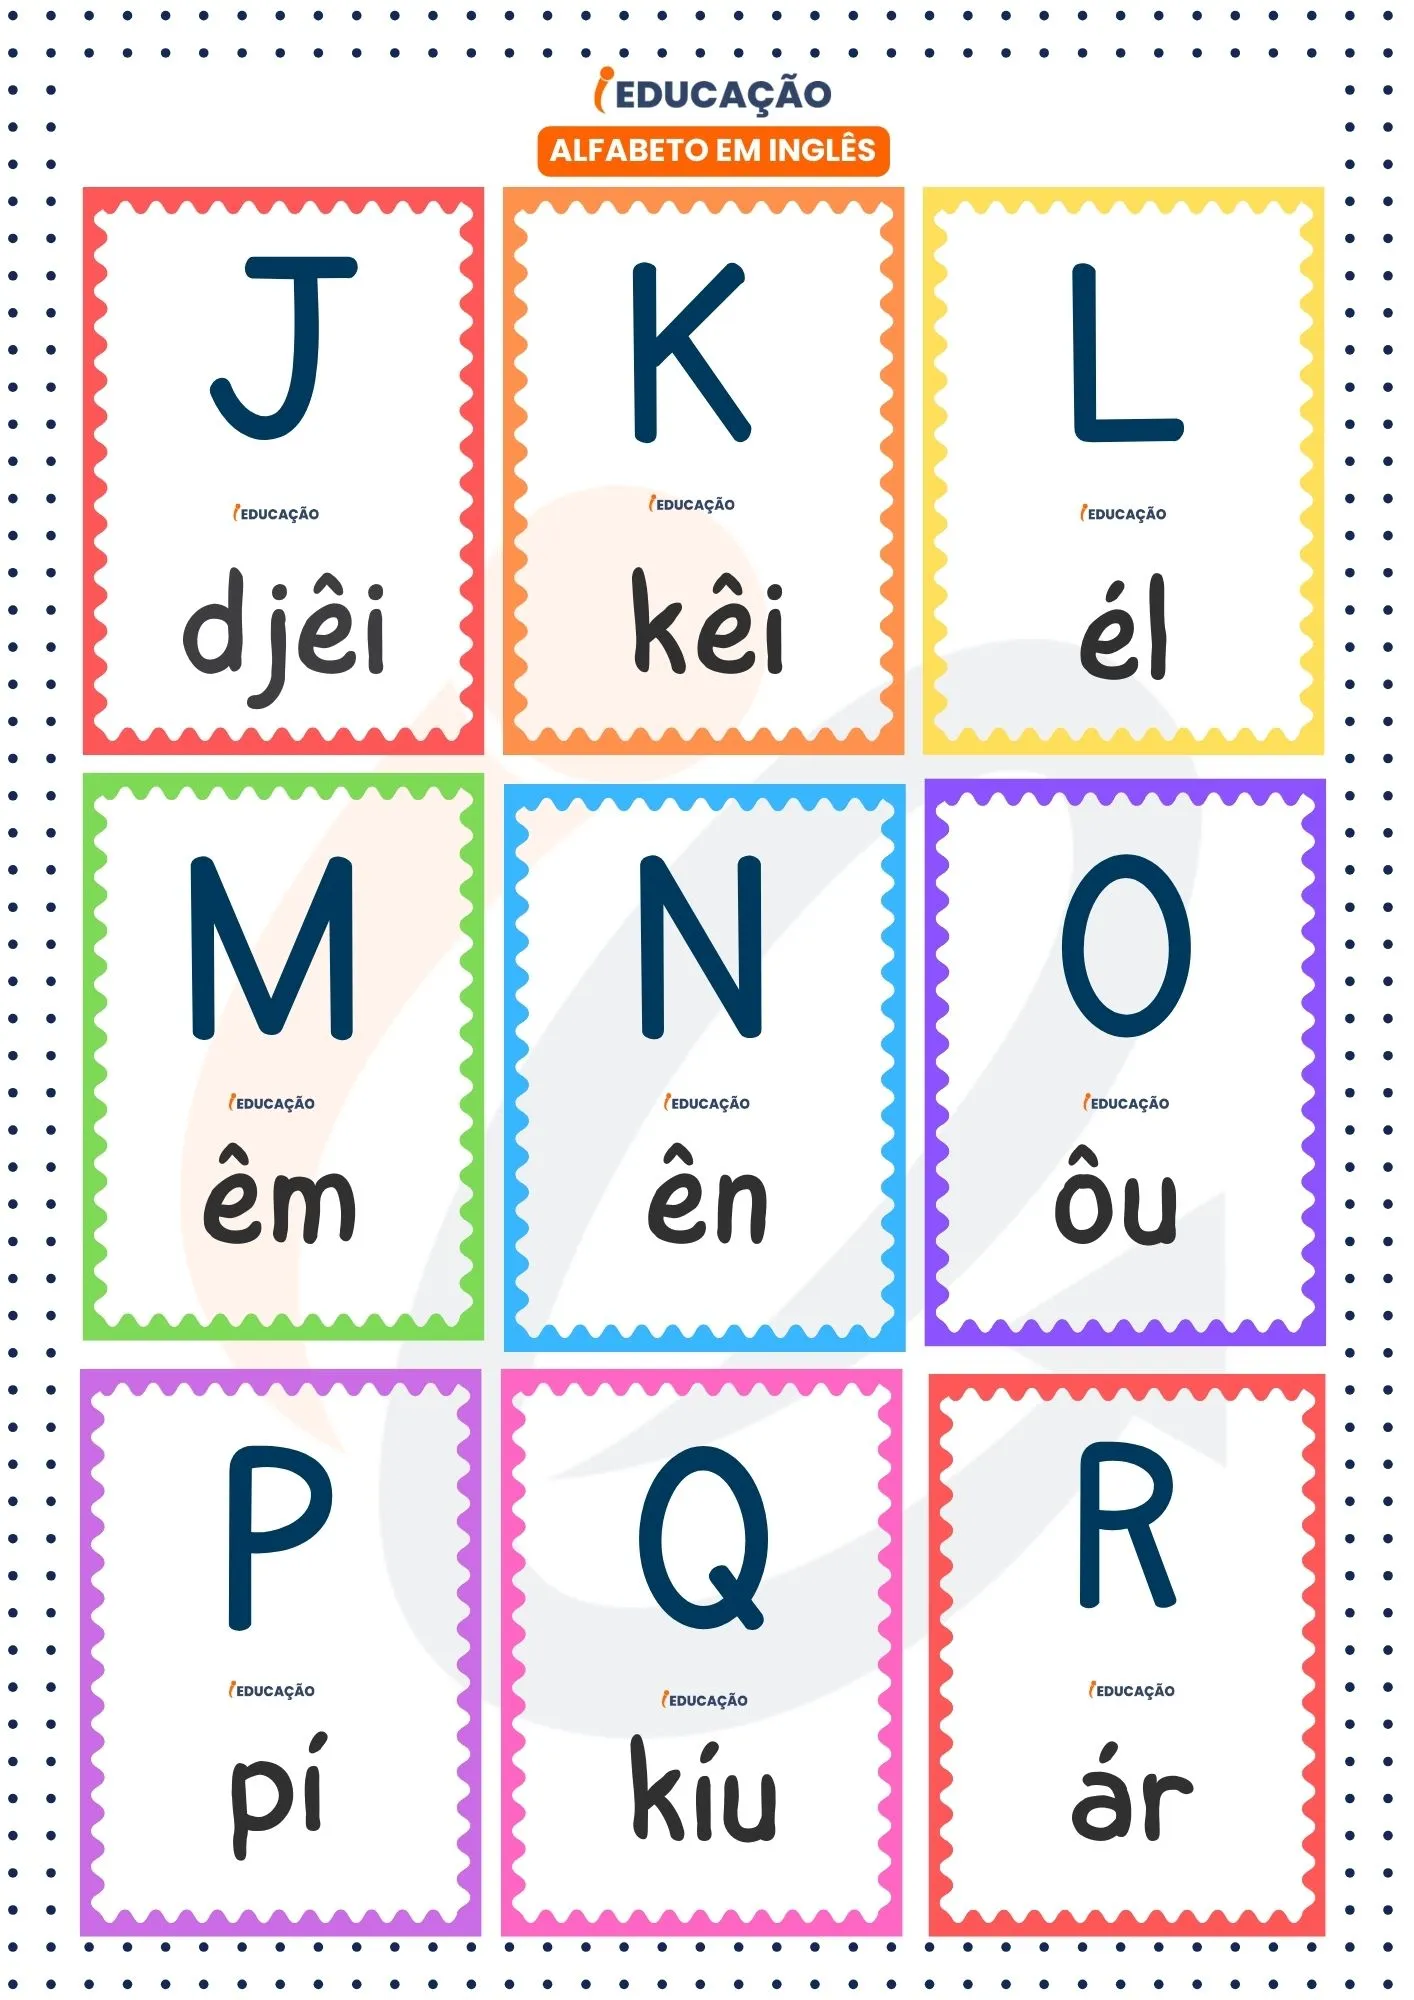 Alfabeto em inglês letras J a R